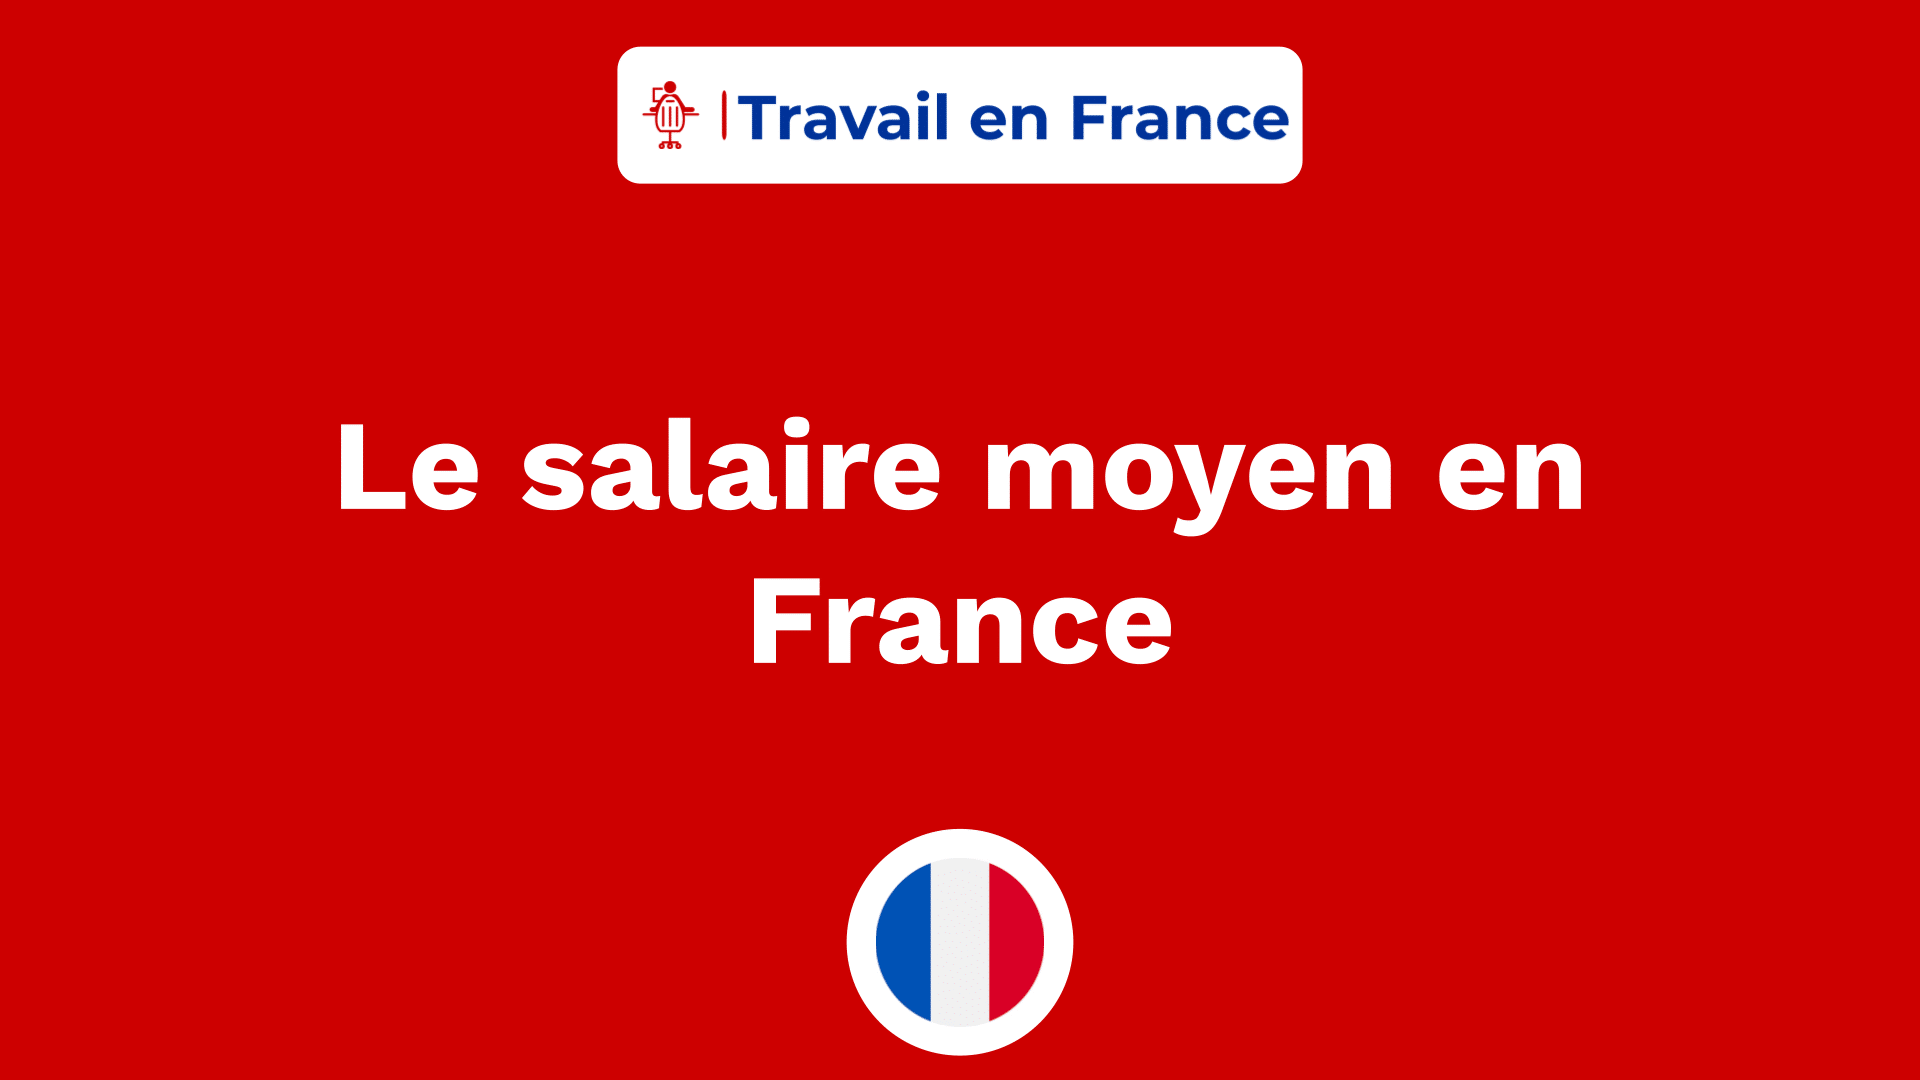 Le salaire moyen en France